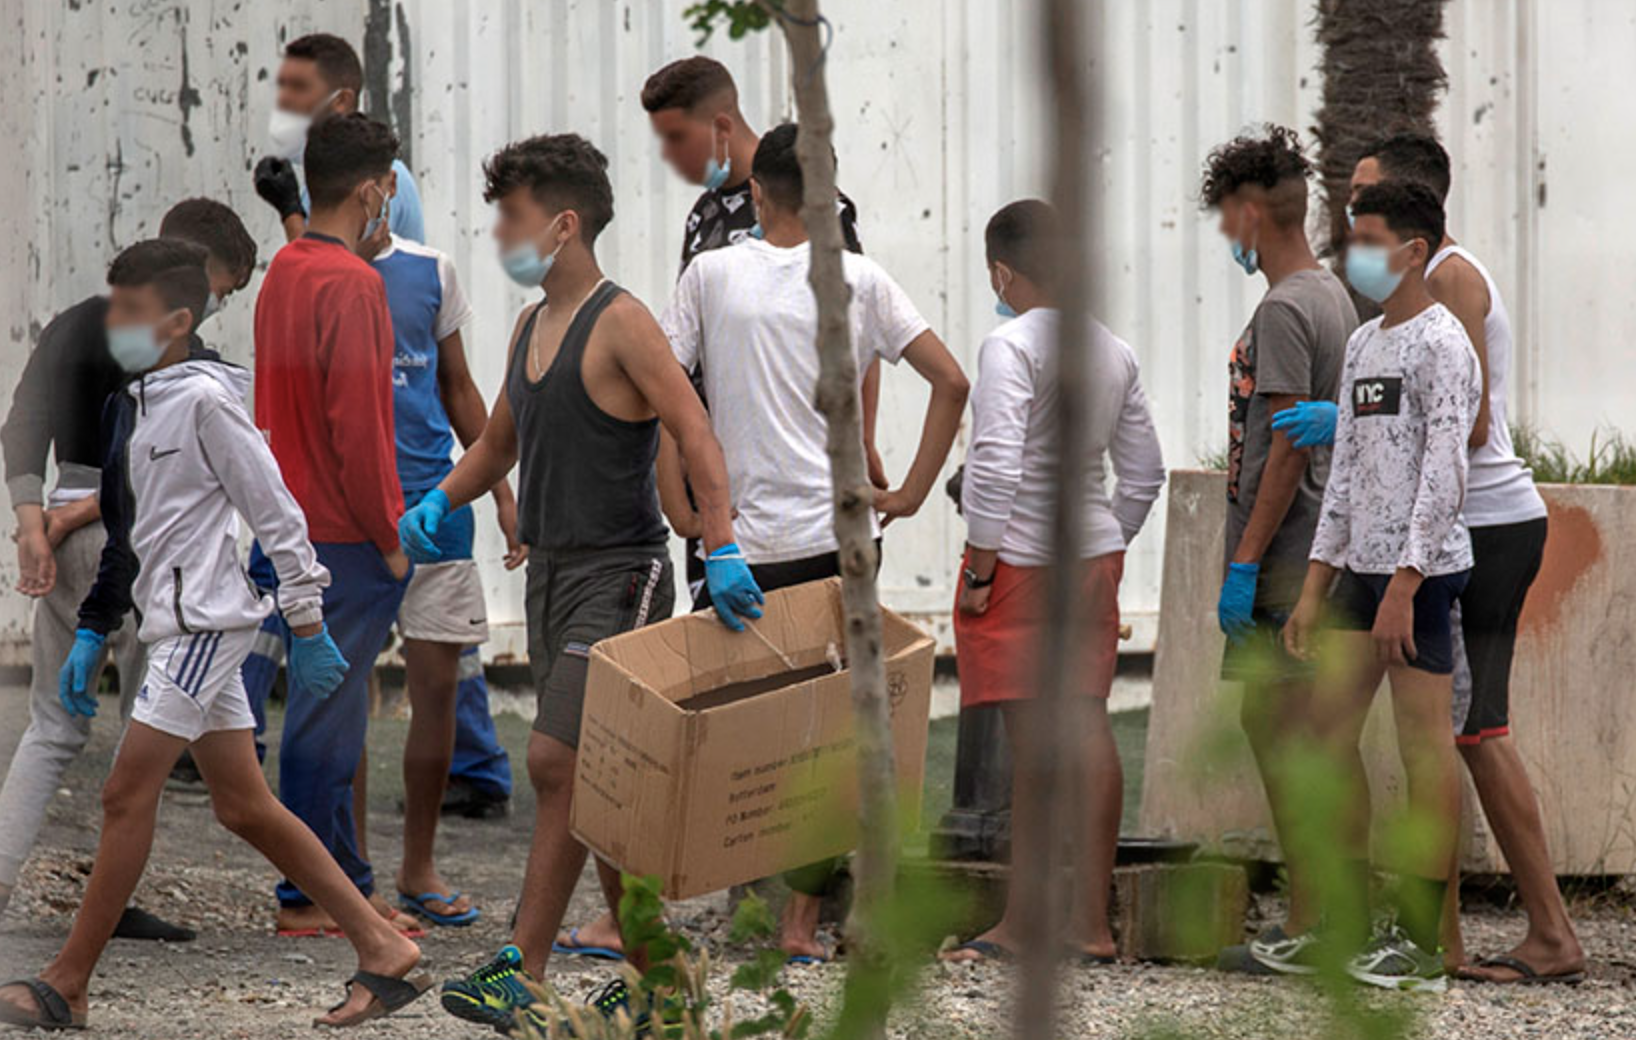 Condenan a nueve años de prisión a dos ceutís por disparar a menores migrantes desde la ventana